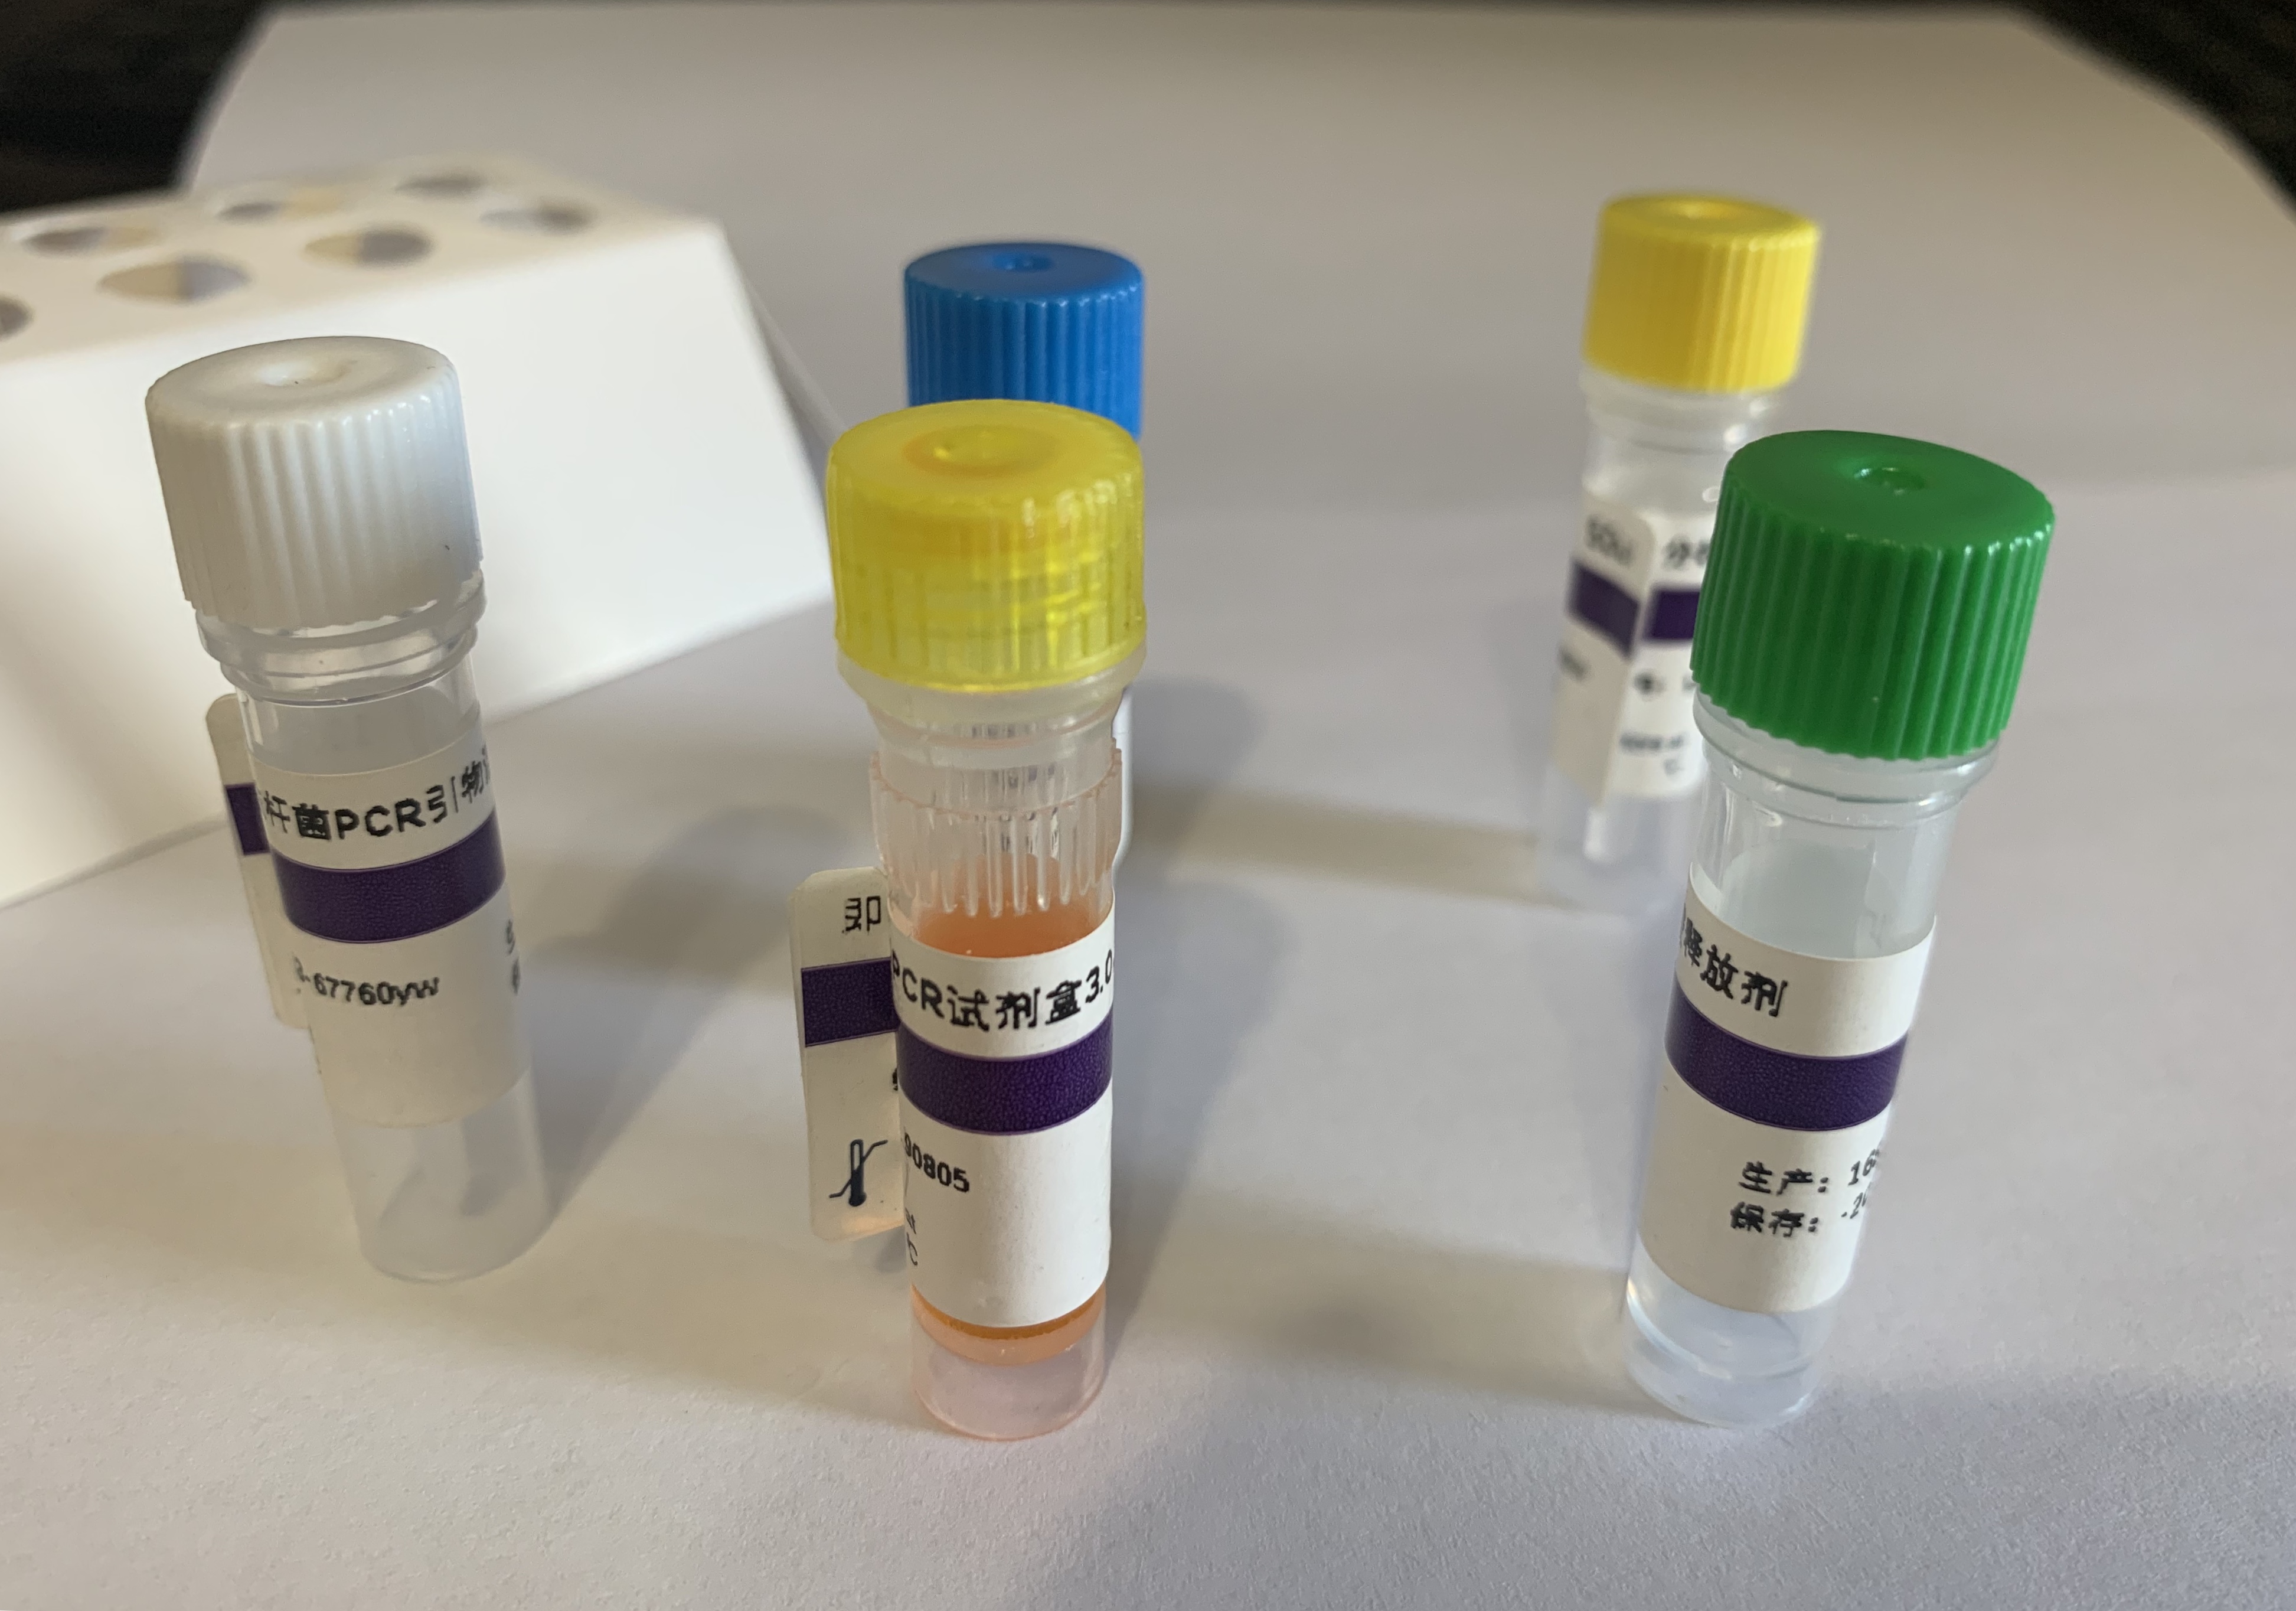 草乌染料法PCR鉴定试剂盒